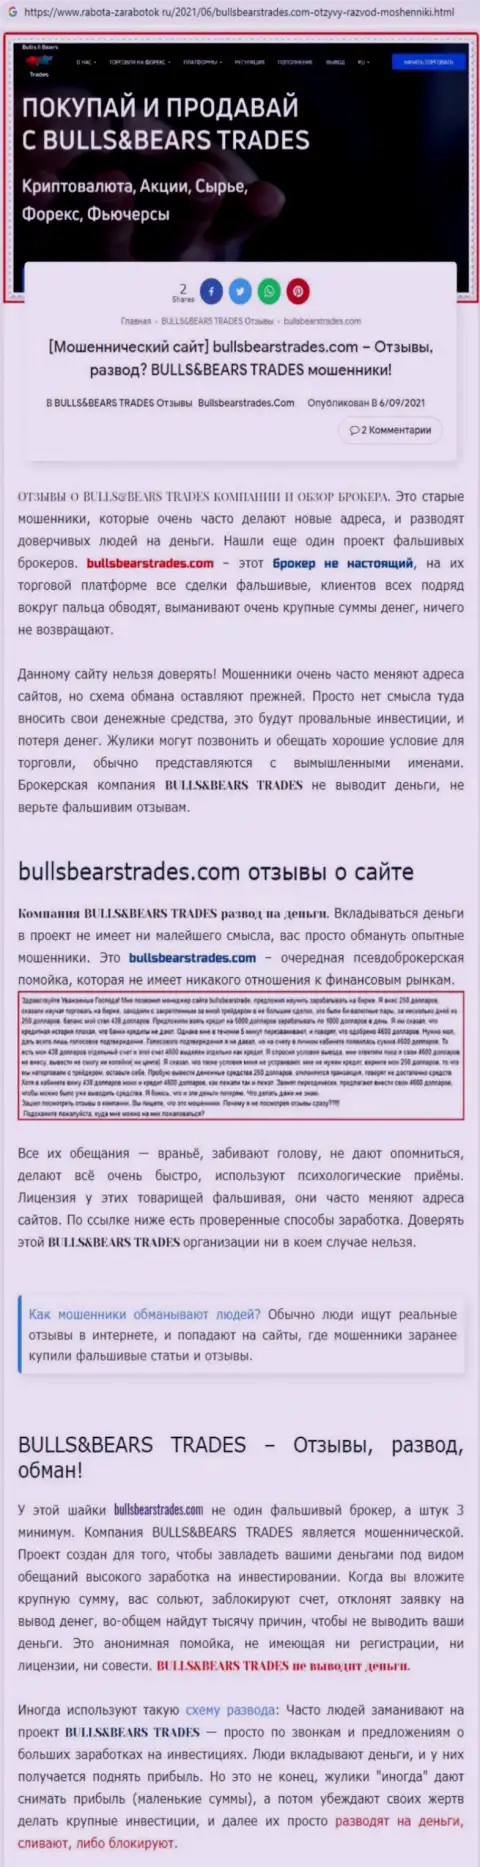 Обзор мошеннической компании Bulls BearsTrades о том, как грабит доверчивых клиентов